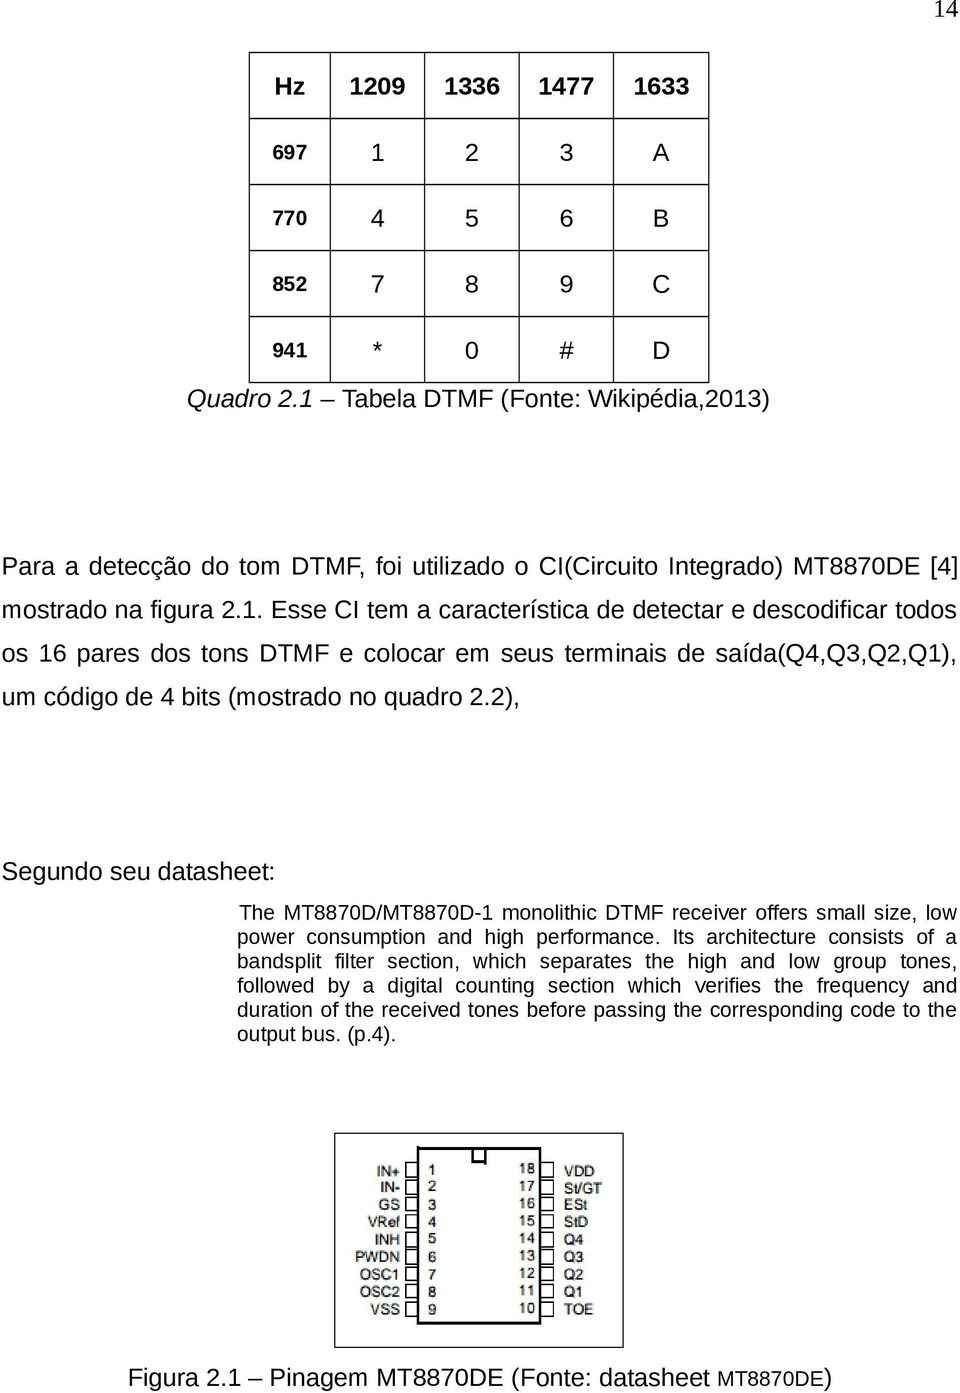 . Esse CI tem a característica de detectar e descodificar todos os 6 pares dos tons DTMF e colocar em seus terminais de saída(q4,q3,q2,q), um código de 4 bits (mostrado no quadro 2.